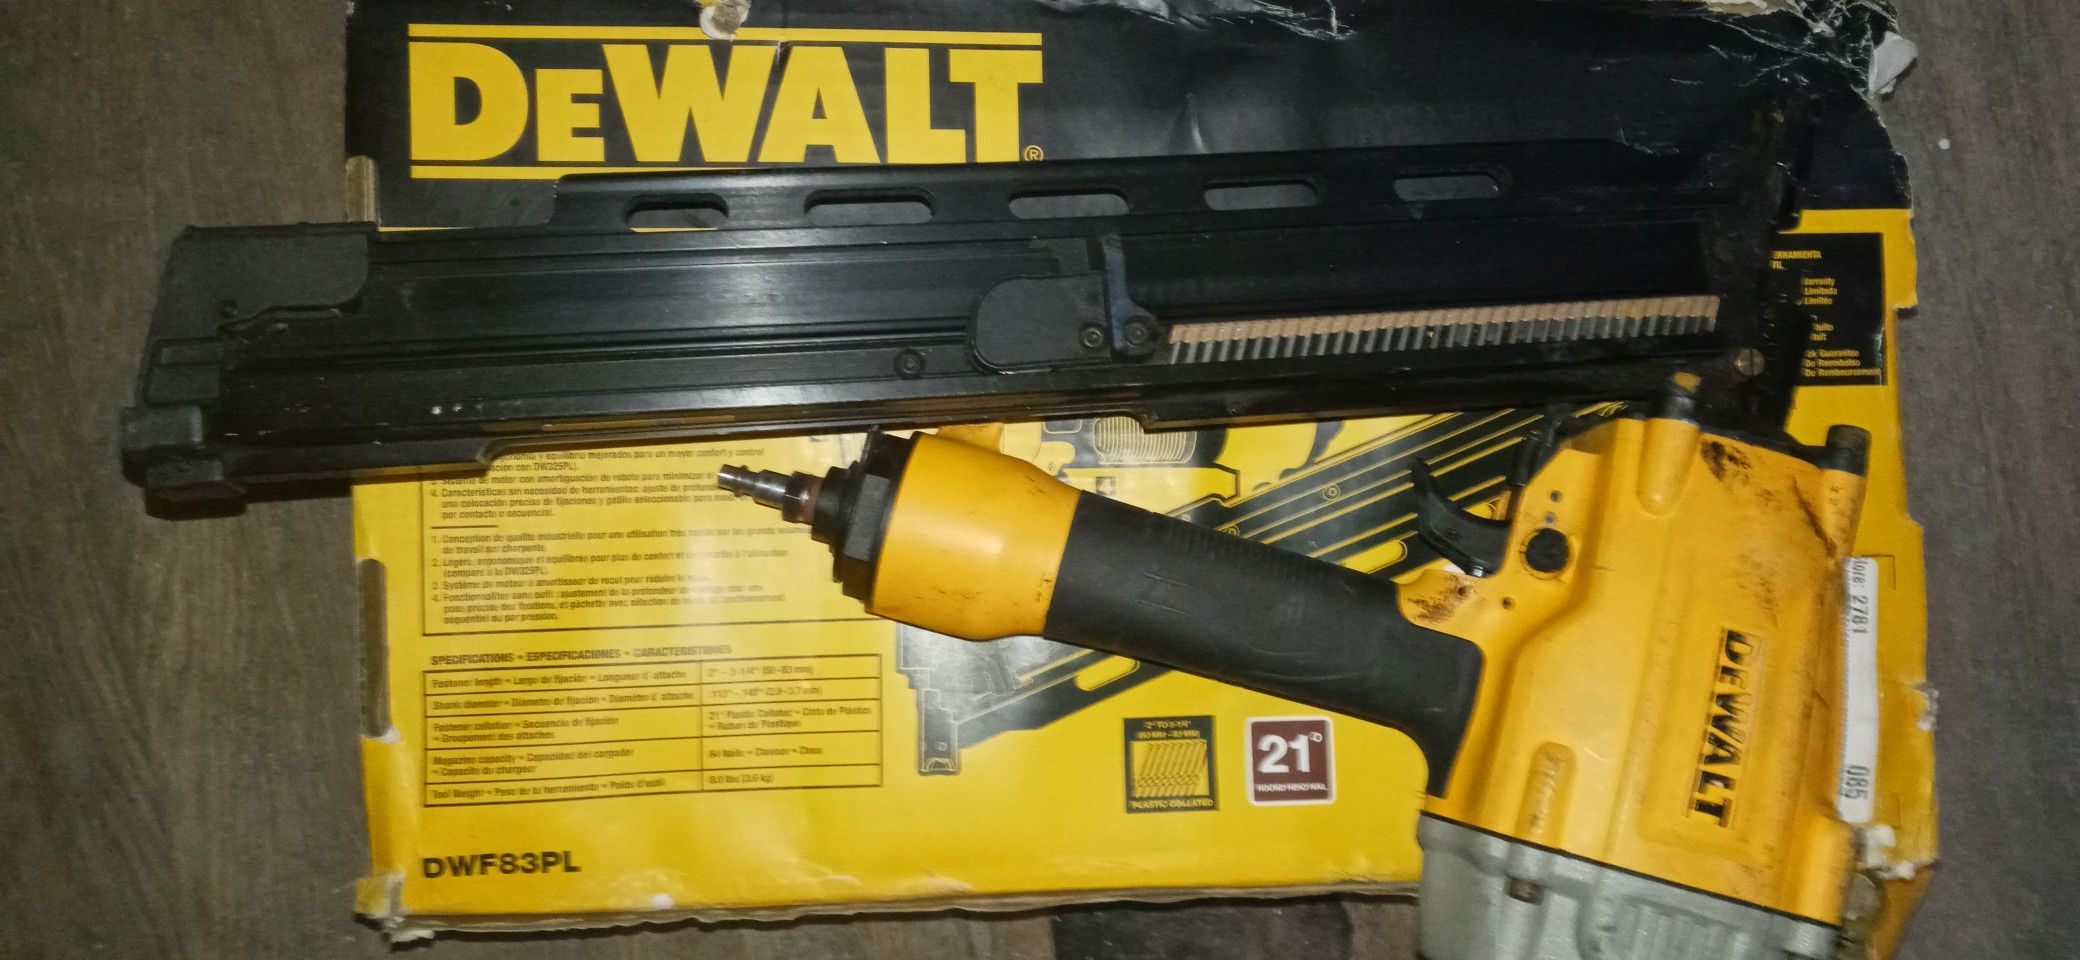 Brand new Dewalt nail gun 21 degree